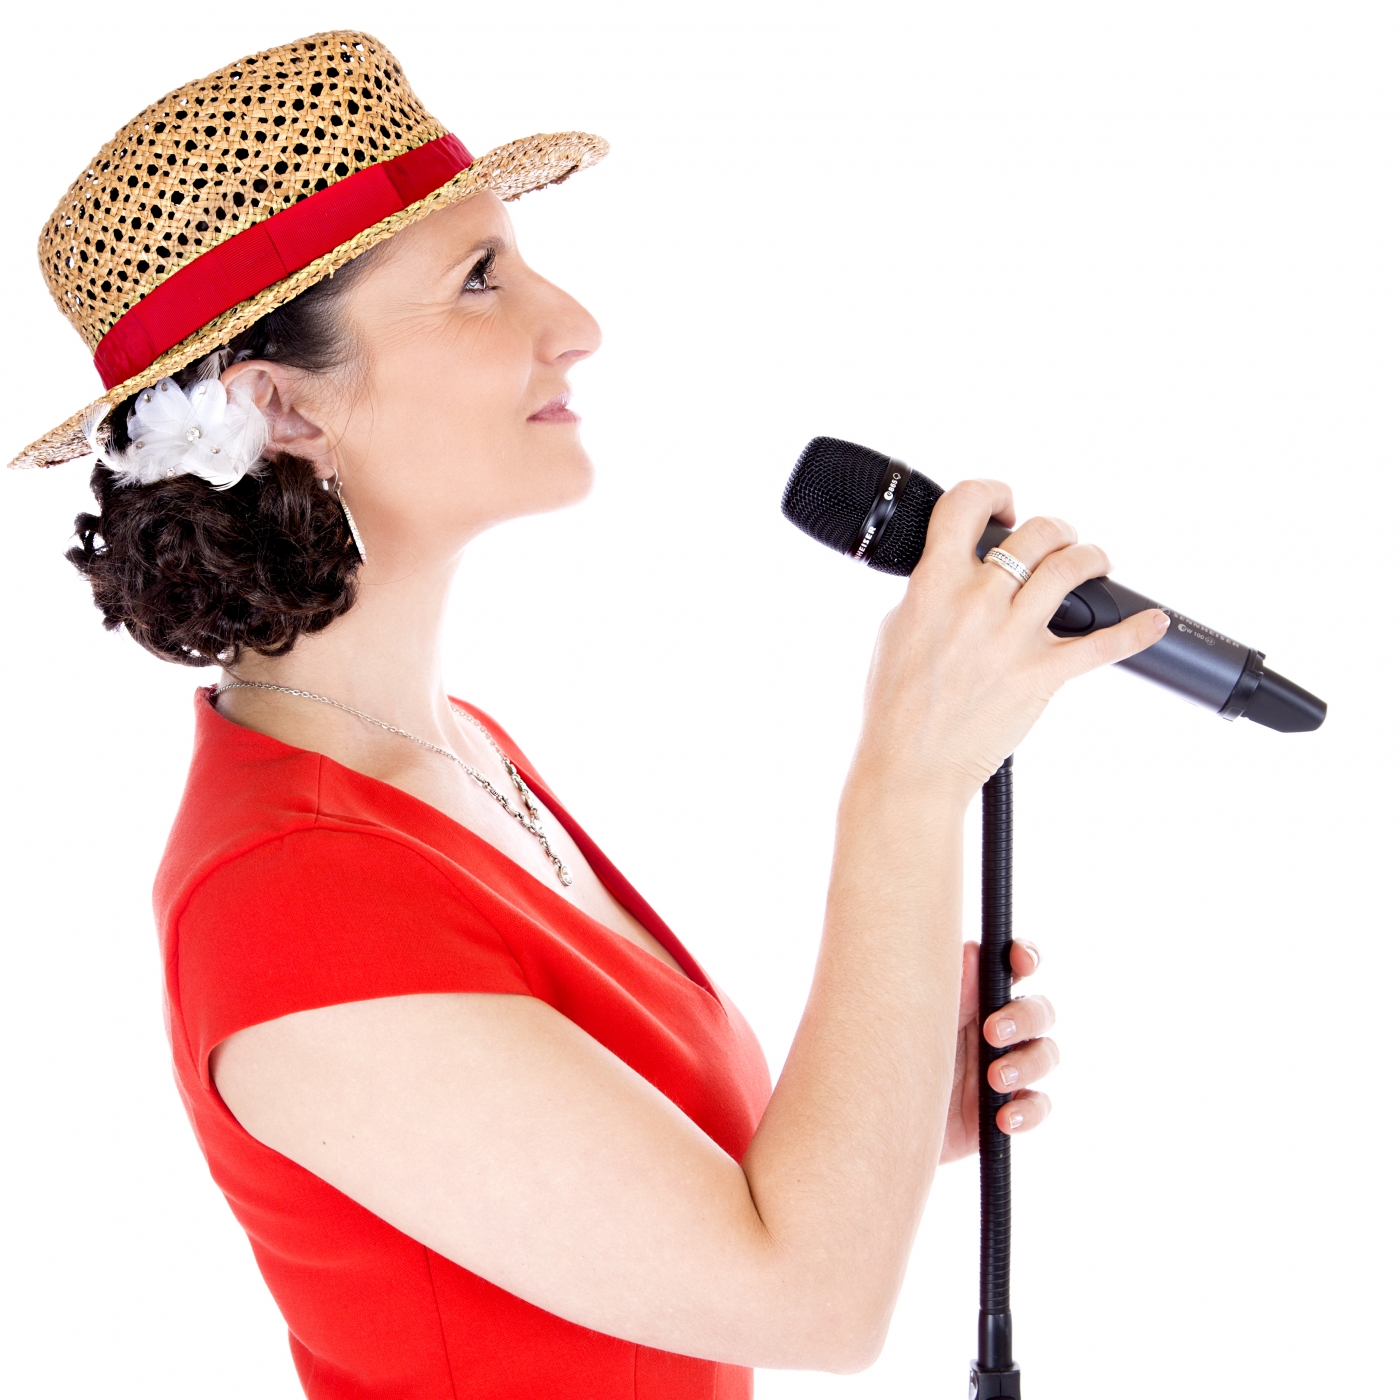 Sängerin in rotem Kleid und Hut singt vor Publikum bei einer Hochzeitsfeier, Hochzeitsfotografie und Hochzeitsplanung.